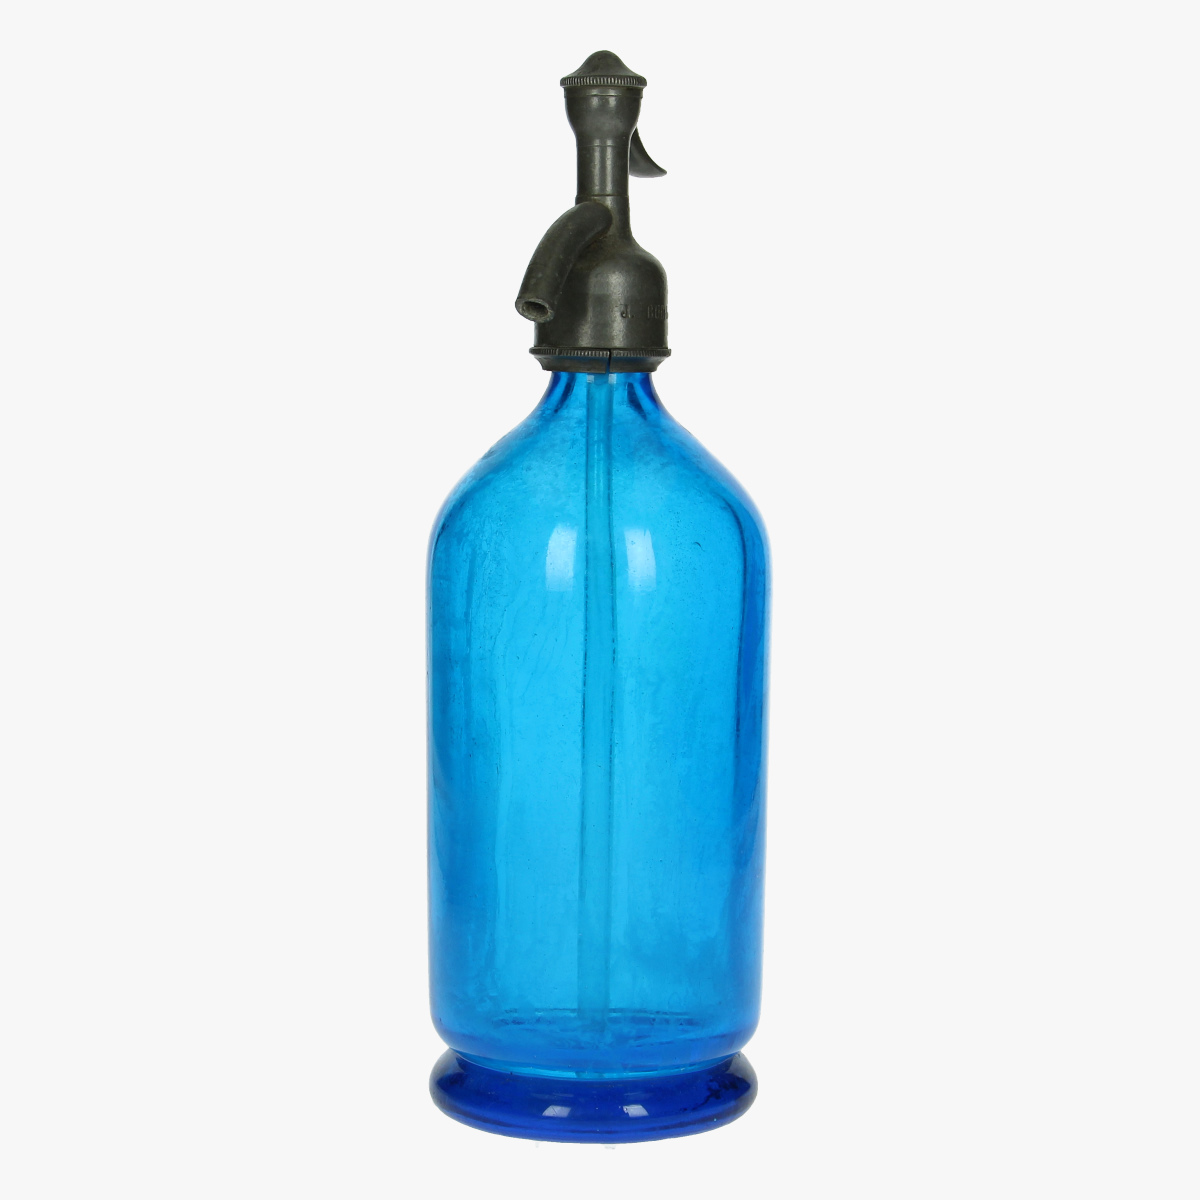 Afbeeldingen van oude soda fles blauw 